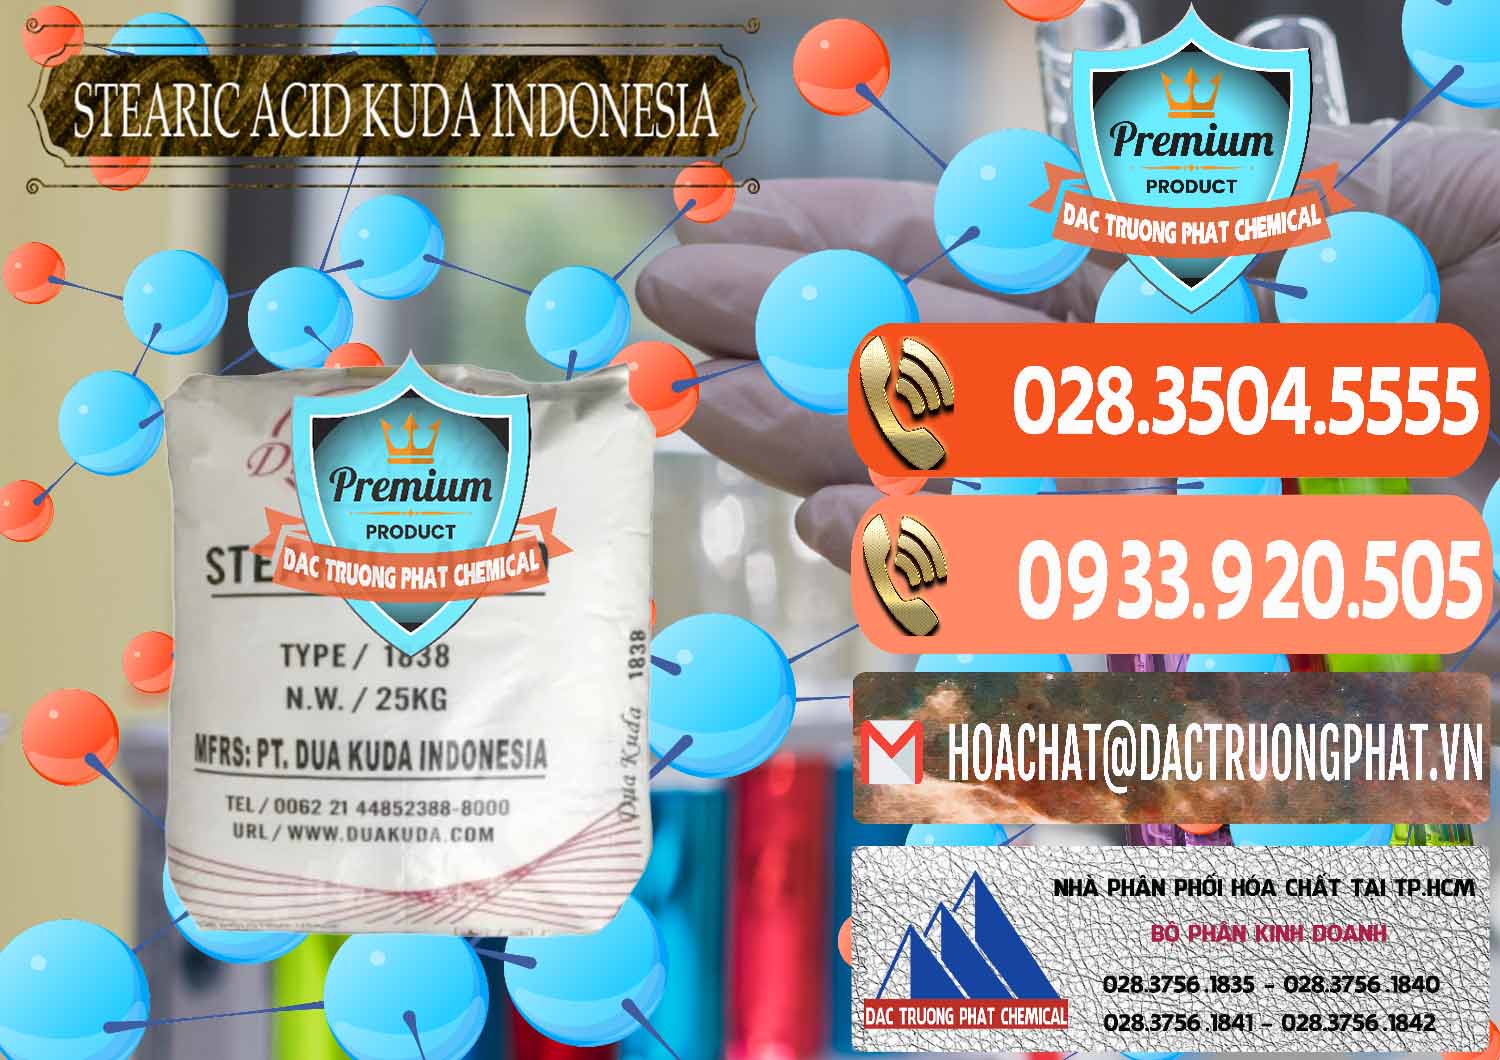 Nơi chuyên phân phối - bán Axit Stearic - Stearic Acid Dua Kuda Indonesia - 0388 - Phân phối - cung cấp hóa chất tại TP.HCM - hoachatmientay.com